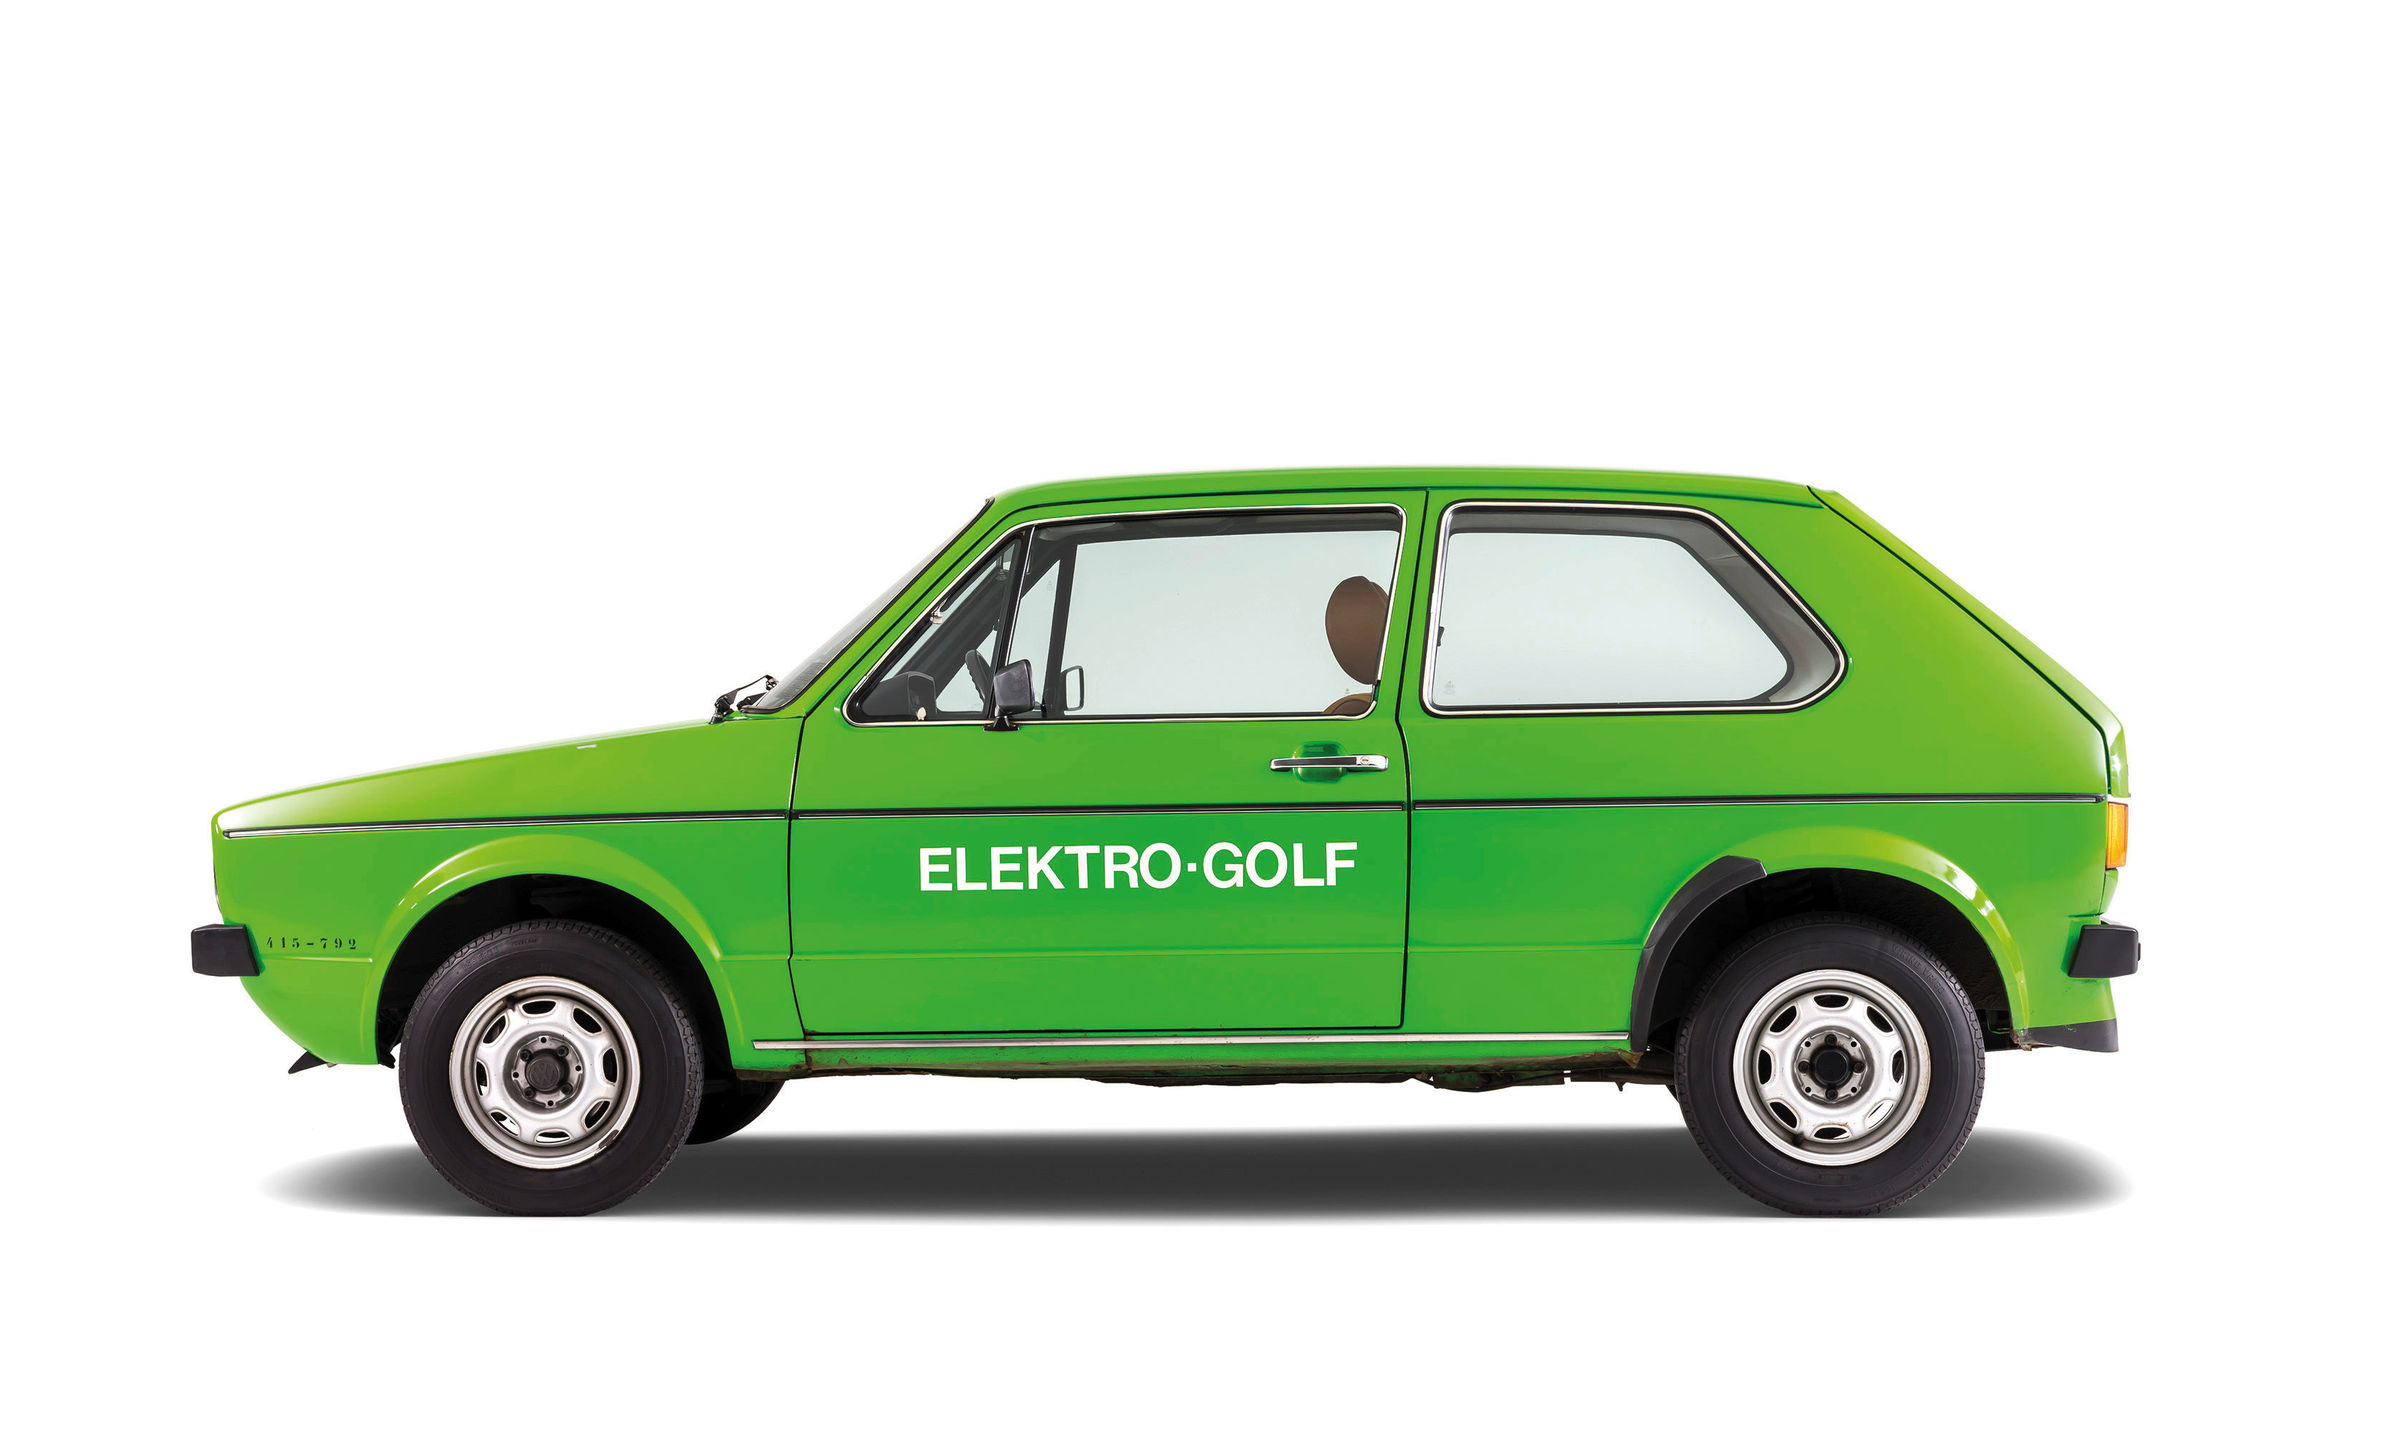 Les constructeurs tentent l'aventure de la voiture électrique depuis près de 50 ans